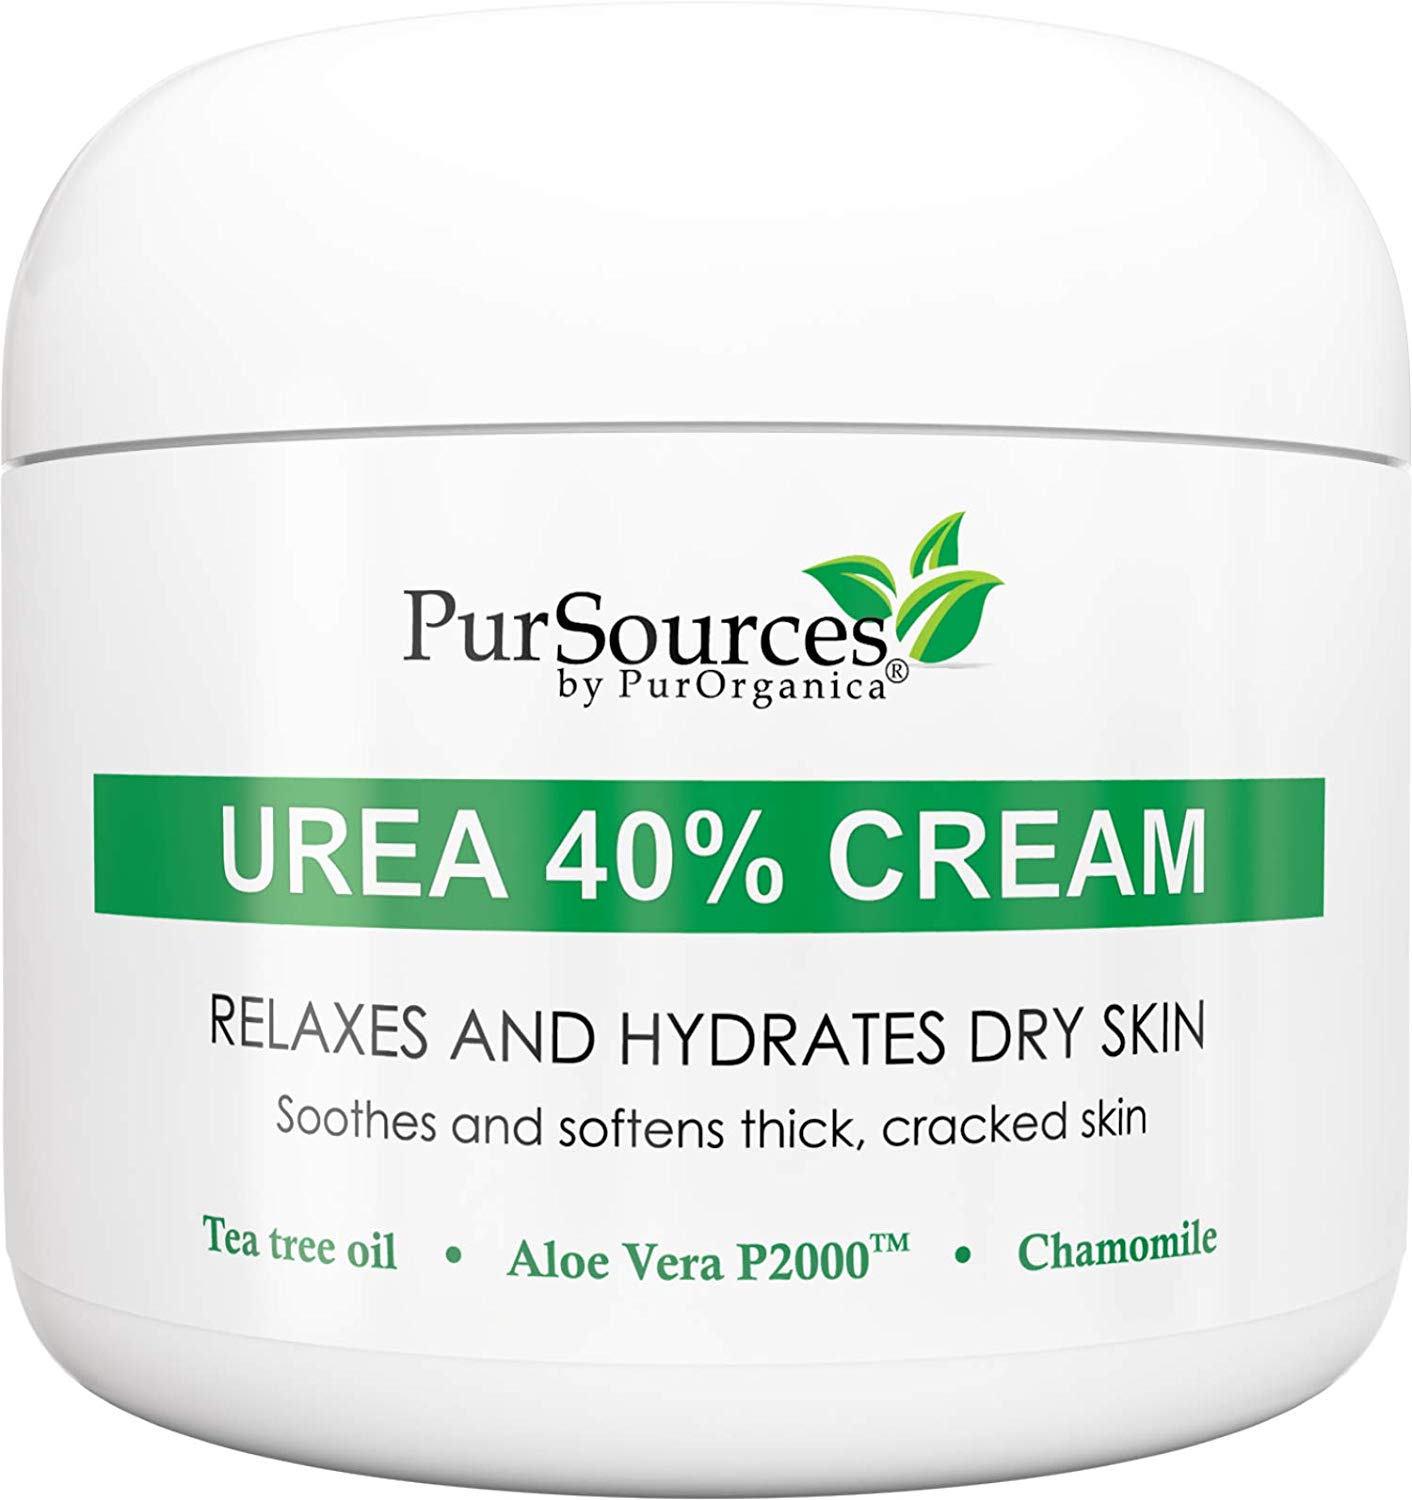 PurSources-Urea-40-Cream